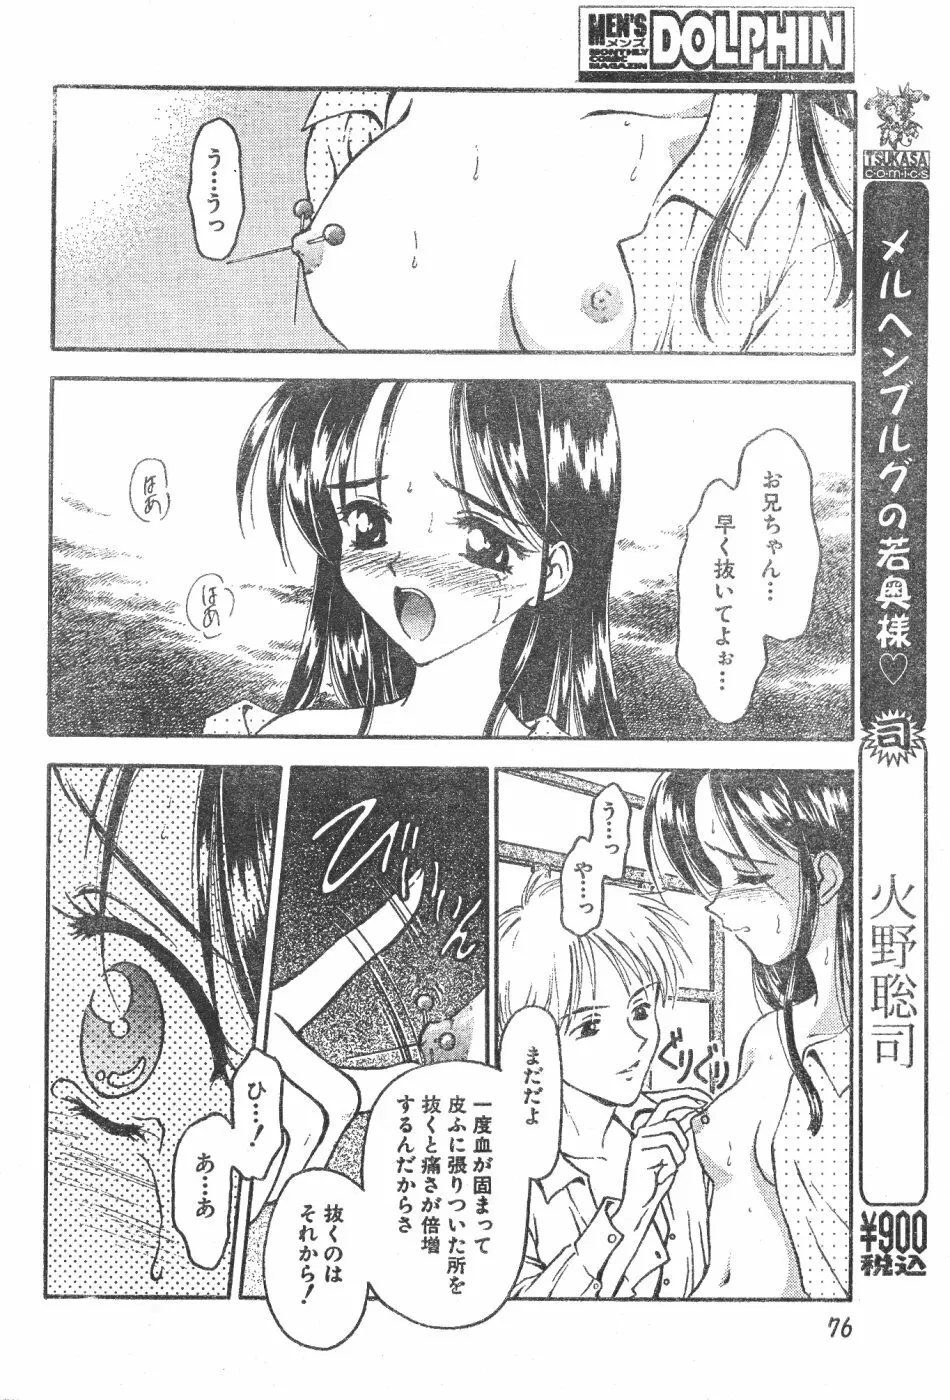 Men’s Dolphin Vol 12 2000-08-01 76ページ